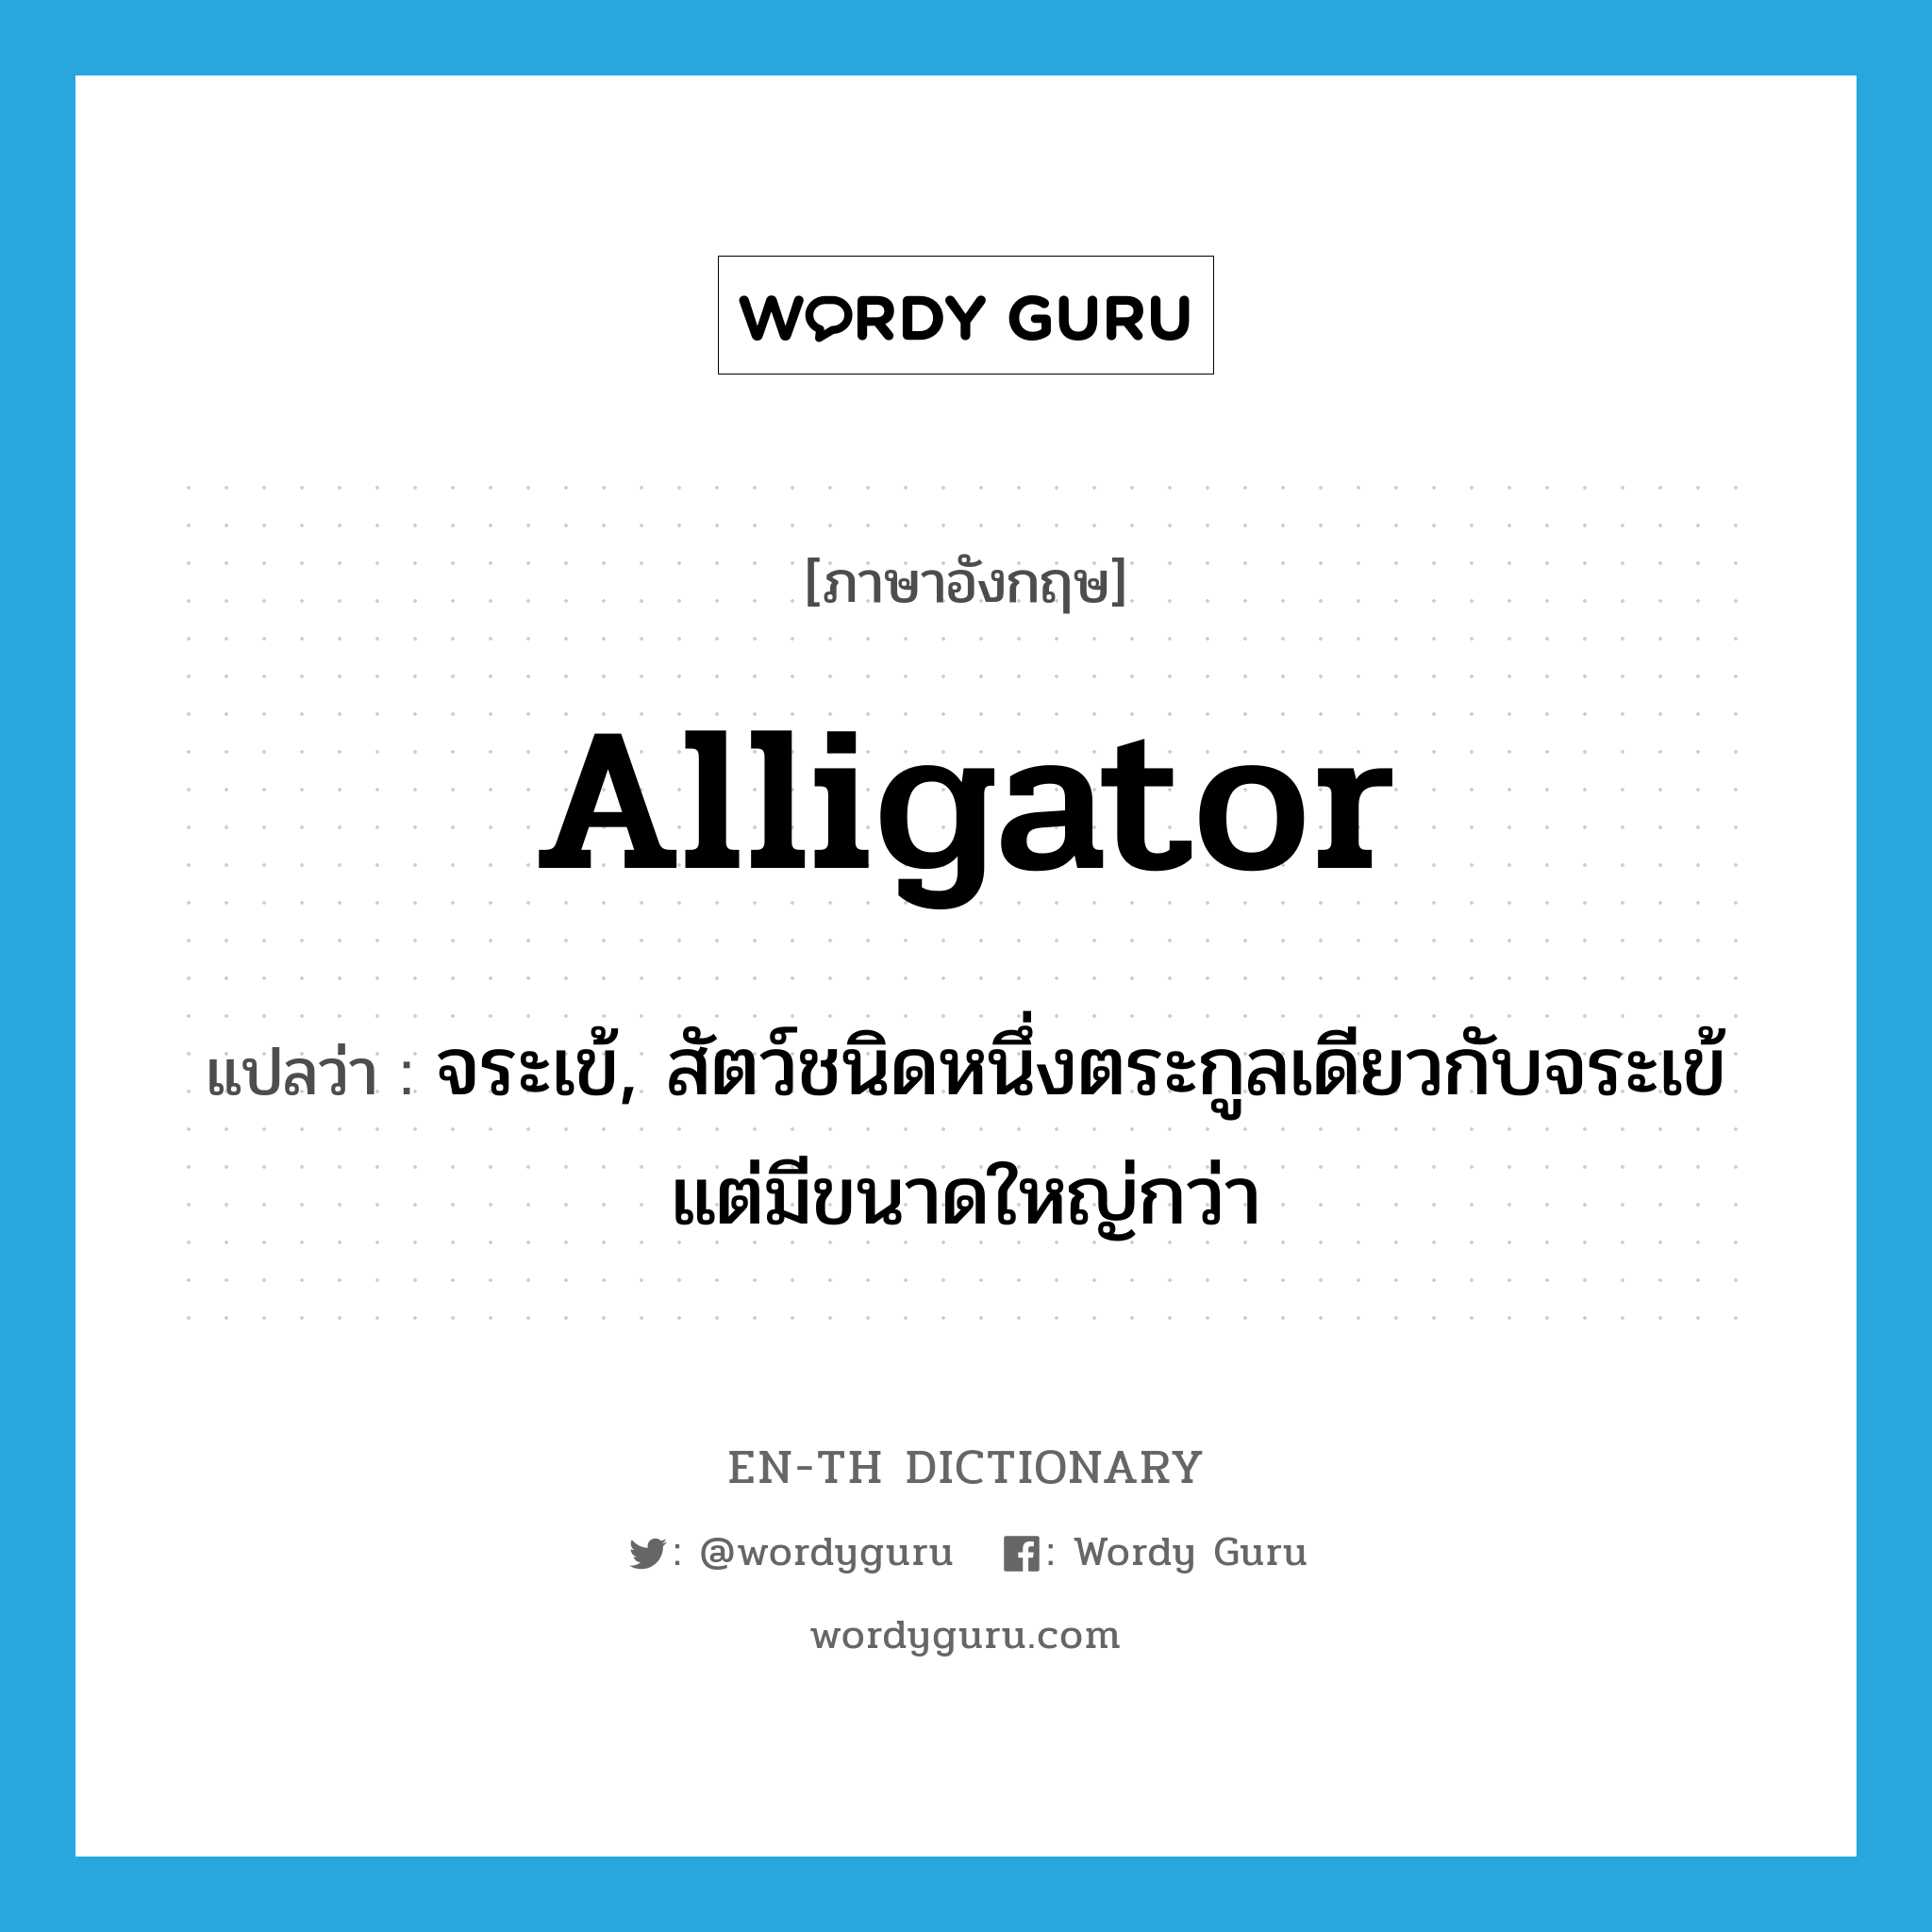 จระเข้, สัตว์ชนิดหนึ่งตระกูลเดียวกับจระเข้แต่มีขนาดใหญ่กว่า ภาษาอังกฤษ?, คำศัพท์ภาษาอังกฤษ จระเข้, สัตว์ชนิดหนึ่งตระกูลเดียวกับจระเข้แต่มีขนาดใหญ่กว่า แปลว่า alligator ประเภท N หมวด N